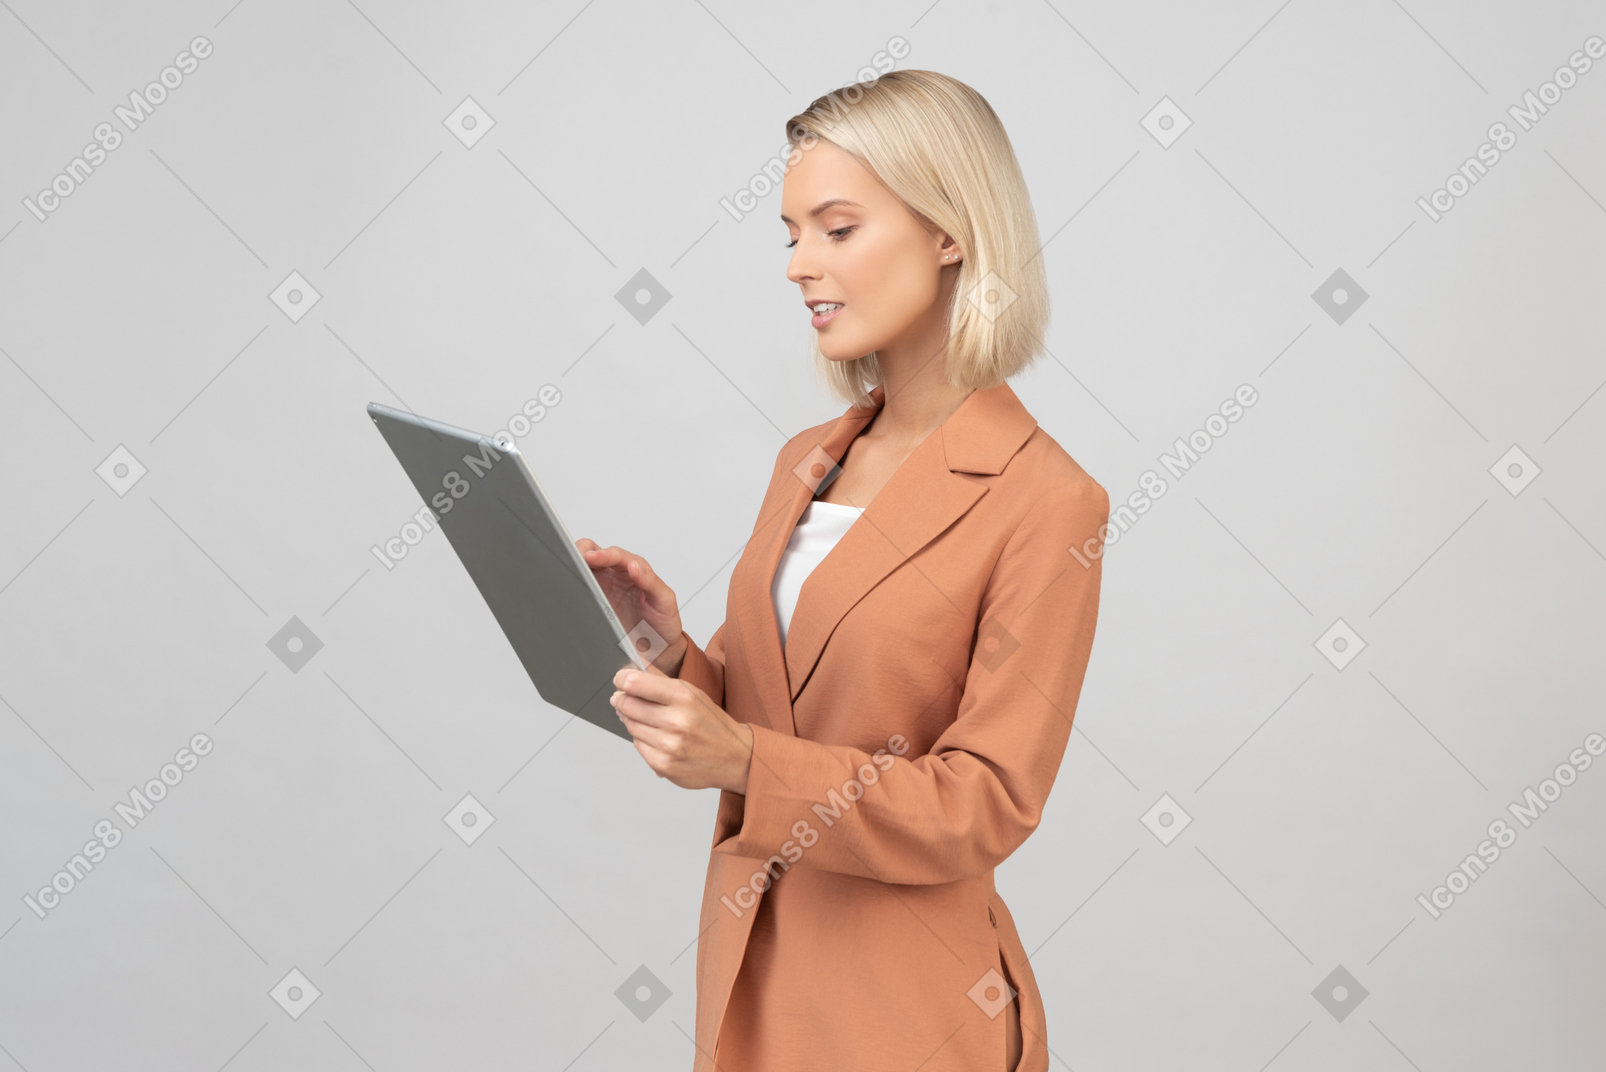 Belle jeune femme tenant une tablette numérique